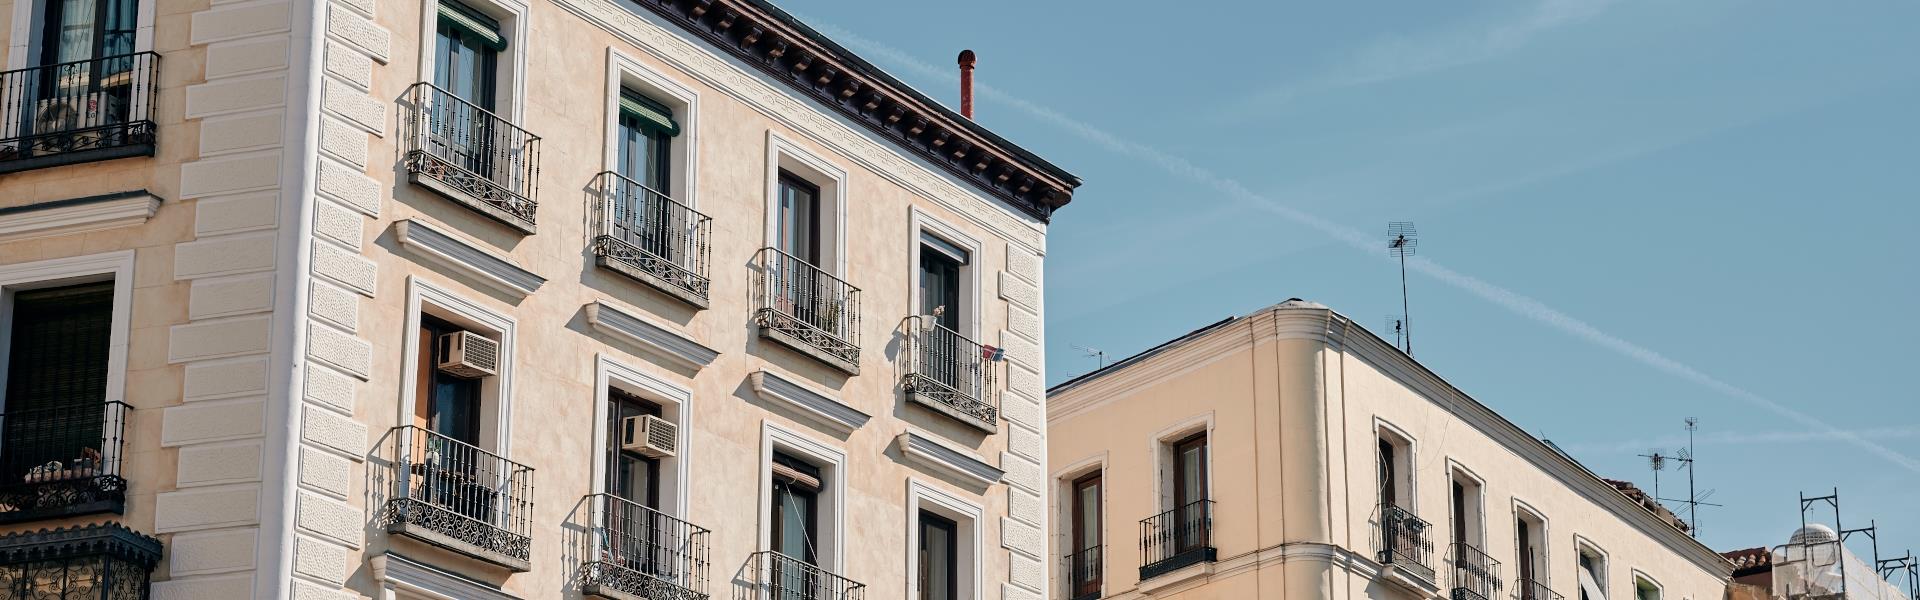 Servicios de gestión para propietarios de viviendas en Madrid